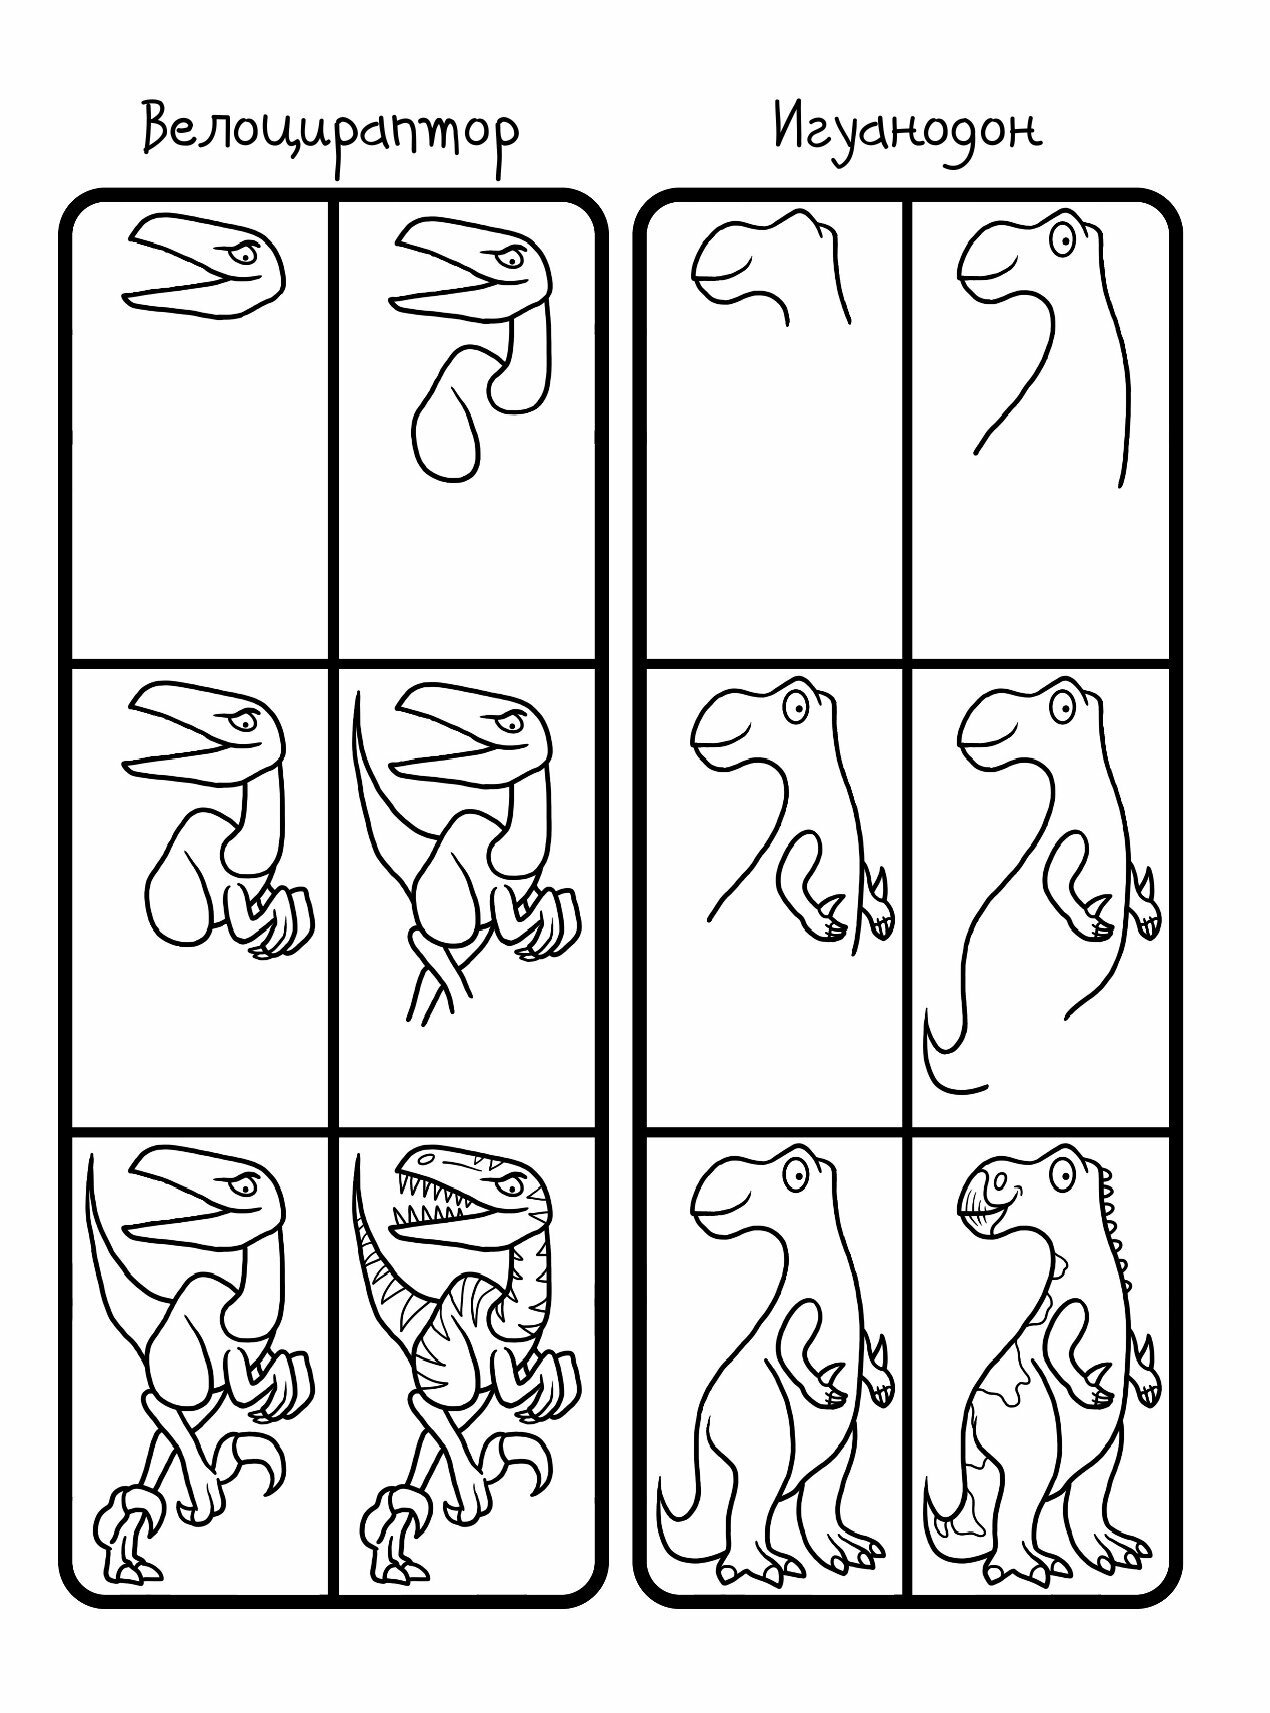 Как научиться рисовать 101 динозавра - фото №10